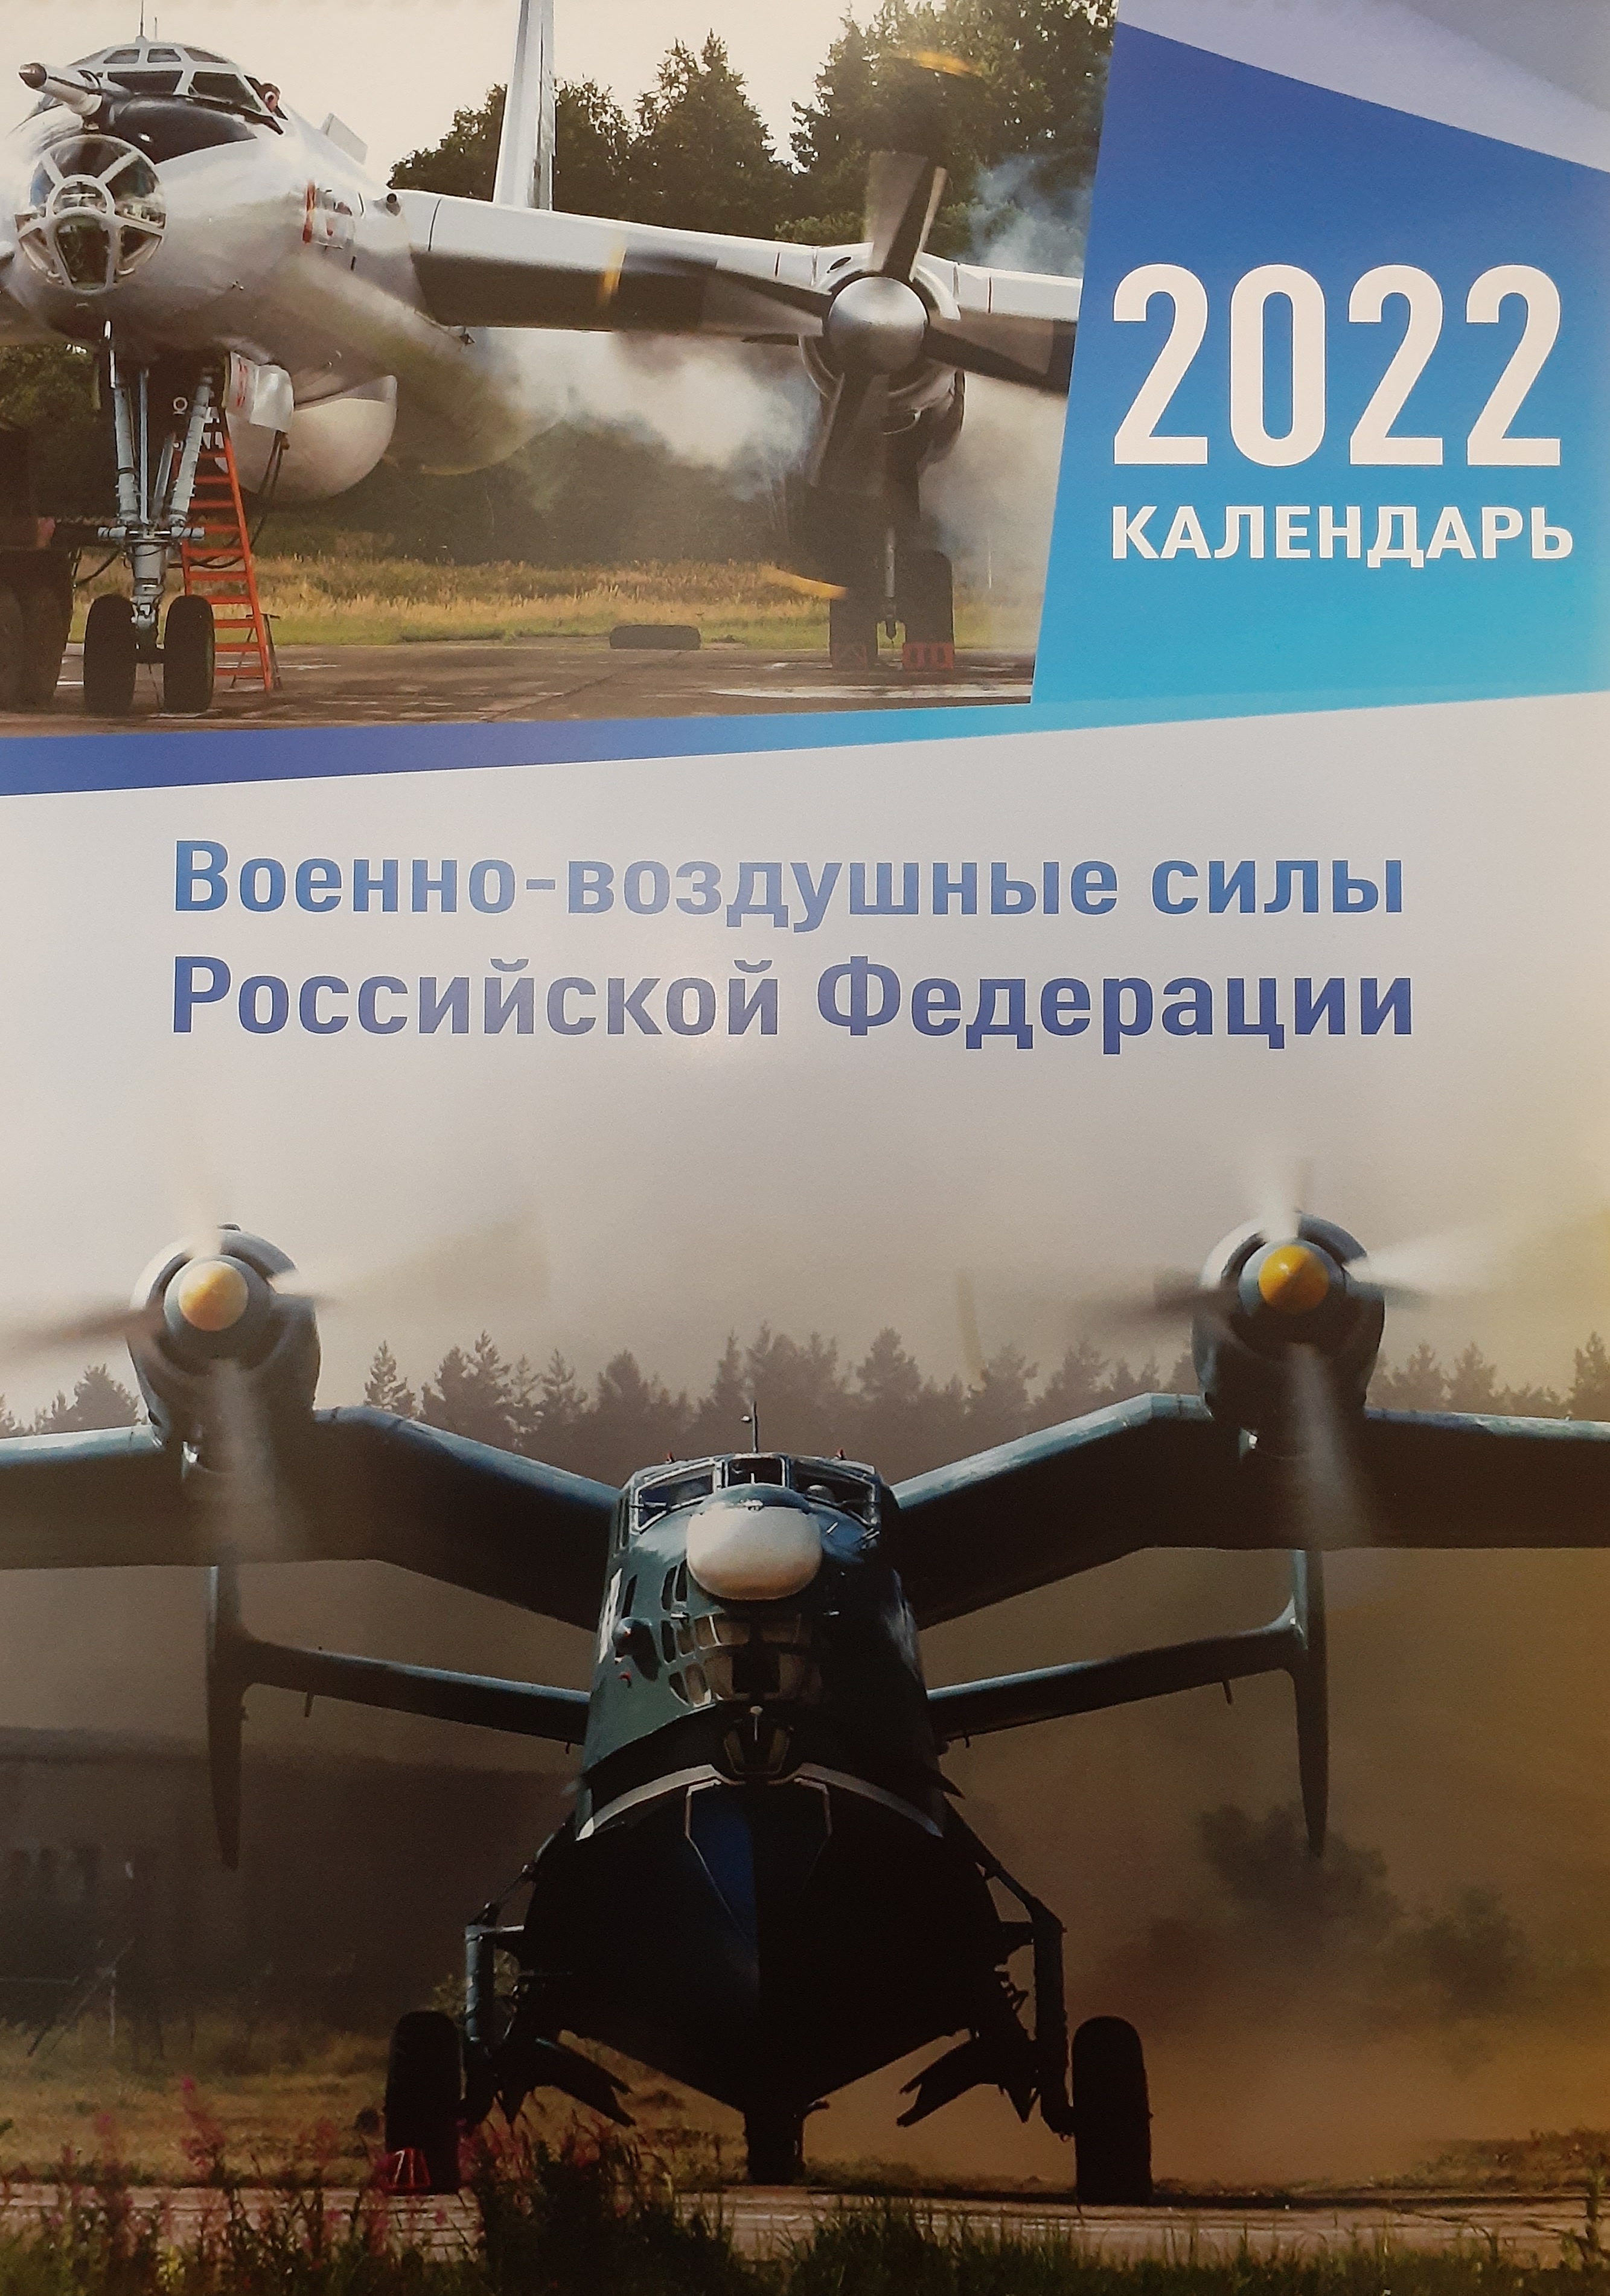 5142014  Календарь "ВВС РФ" на 2022 год